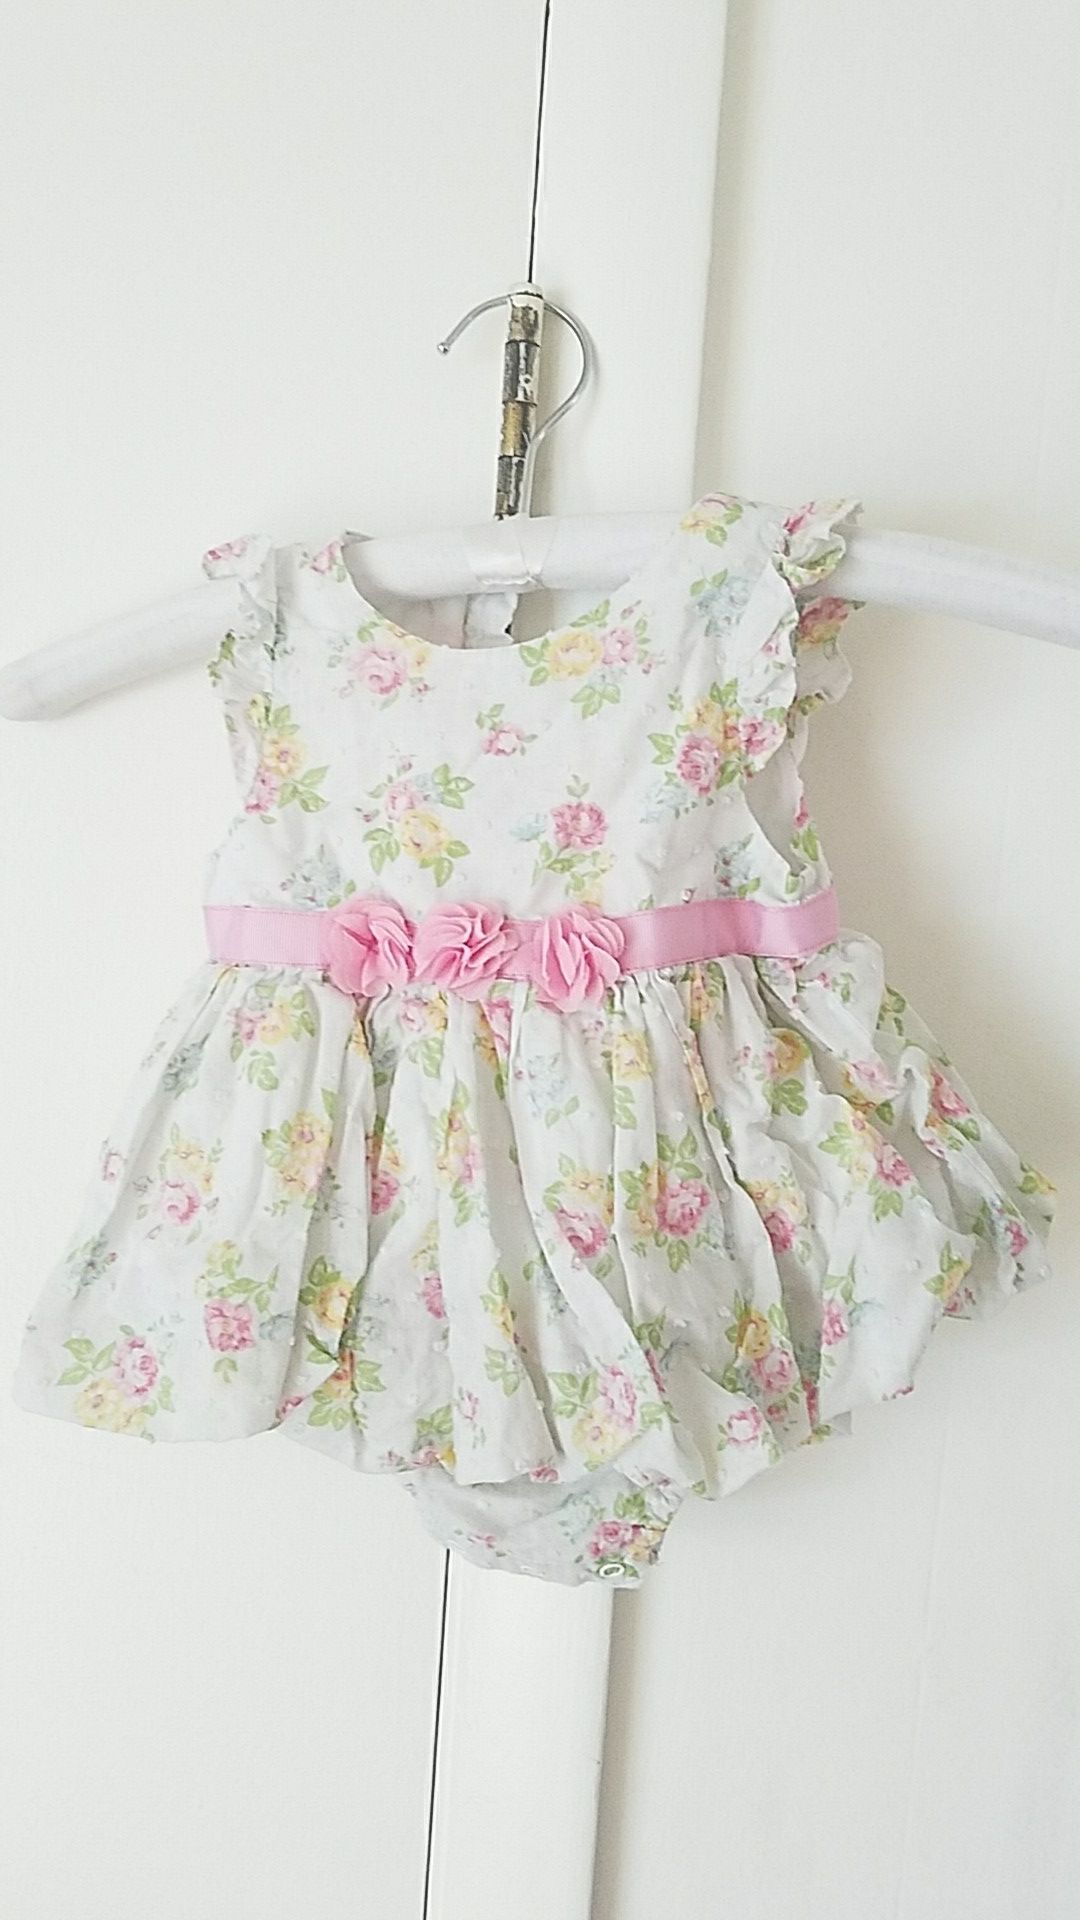 Floral & Lace Dress (Size 12 Months)